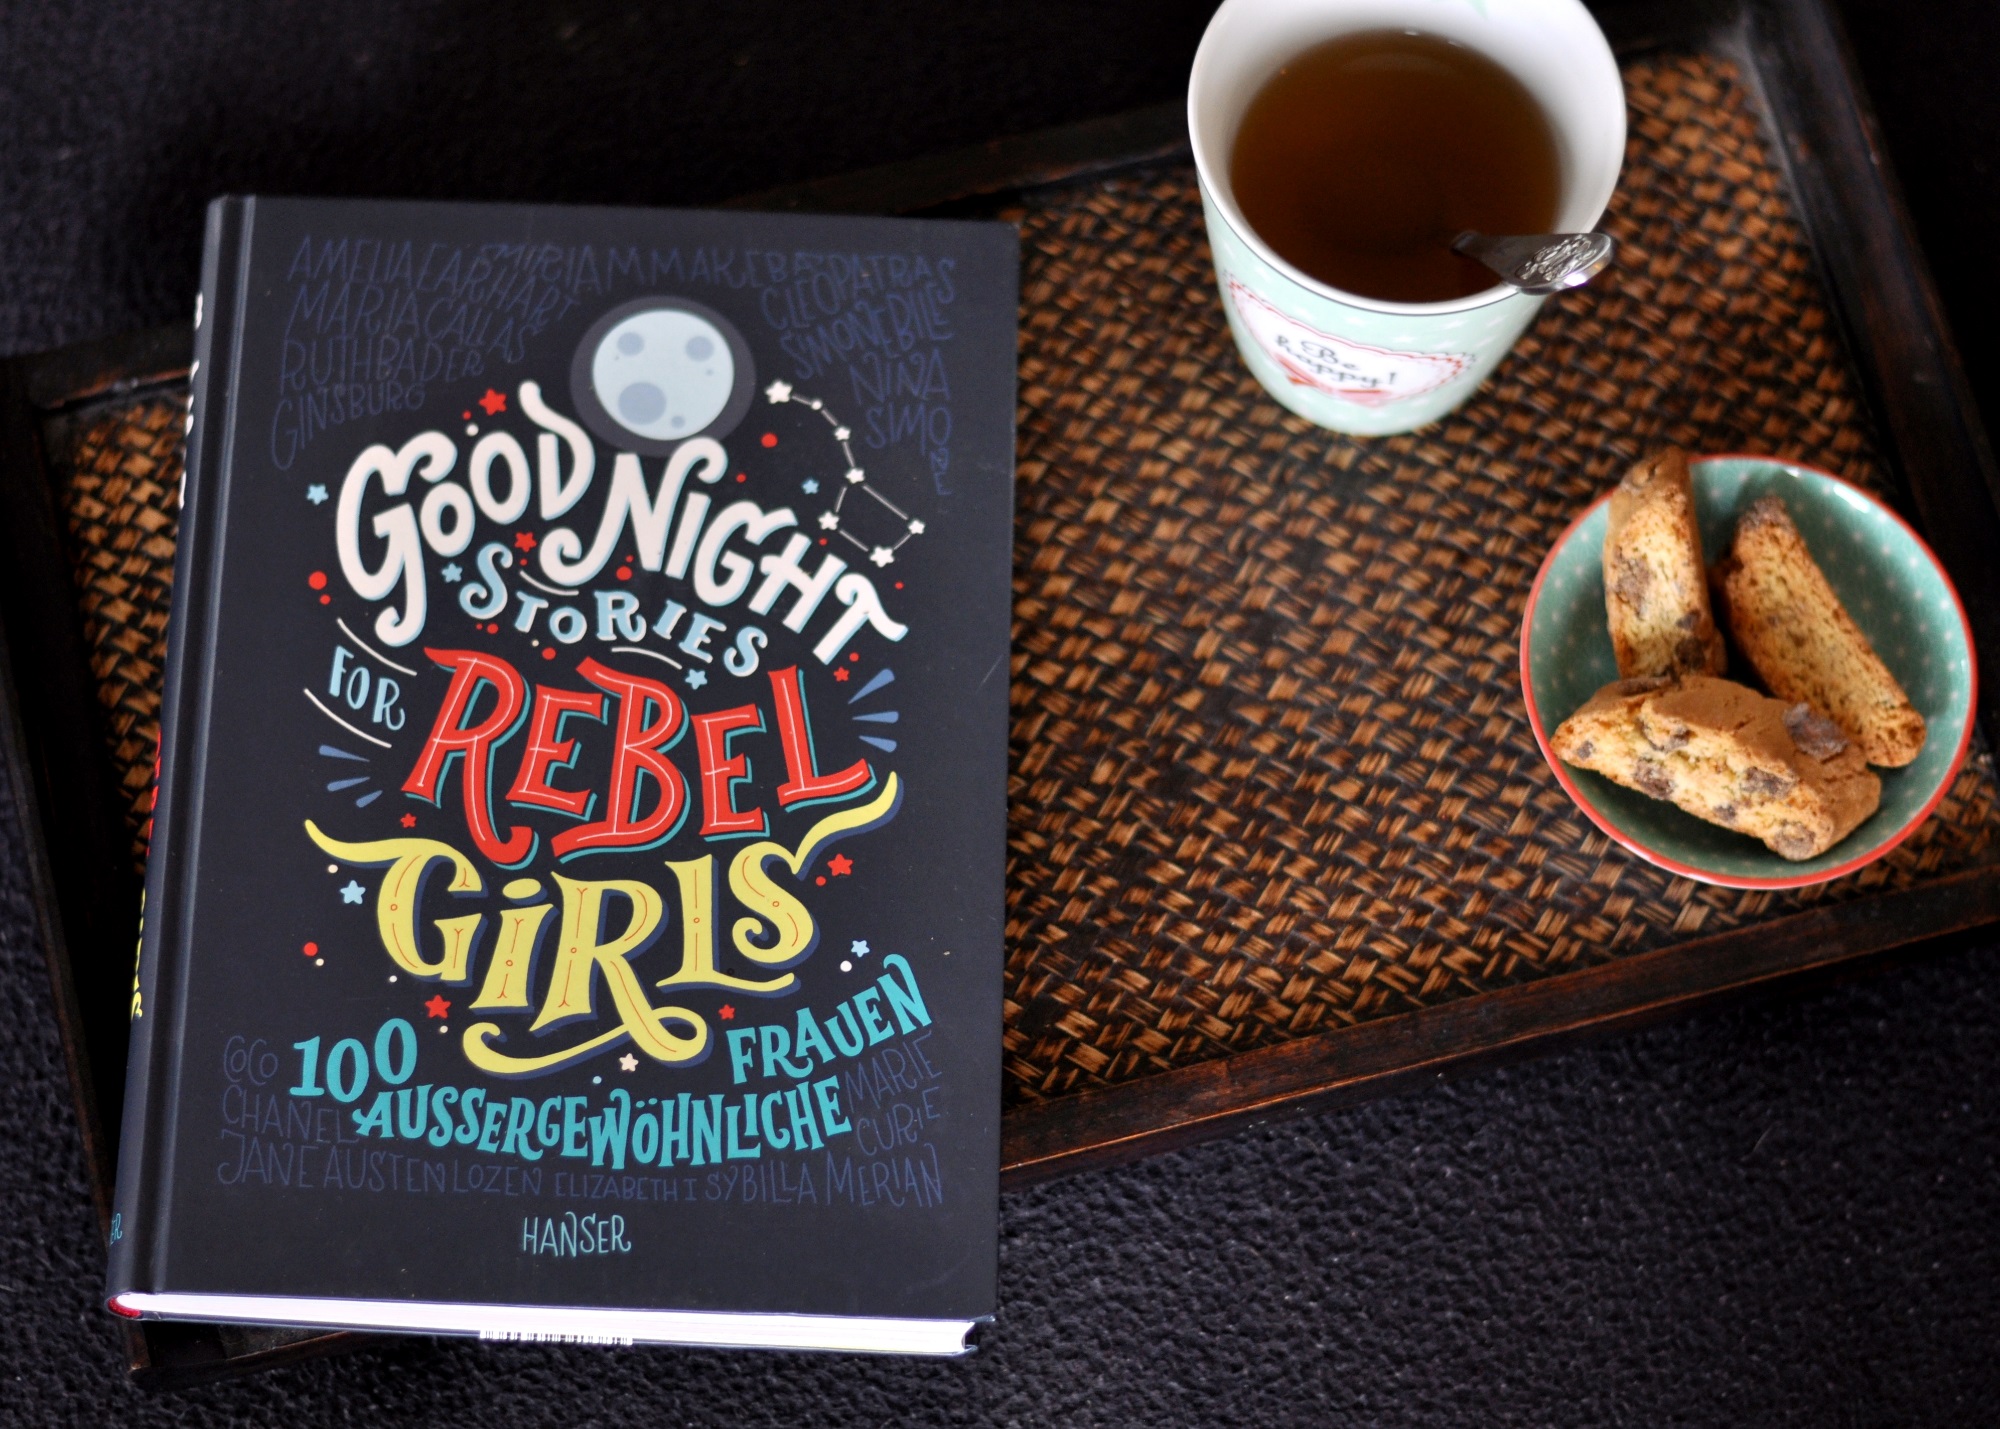 Good Night Stories for Rebel Girls - 100 starke Frauen. Warum ich finde, dass auch Jungs "andere" männliche Vorbilder brauchen